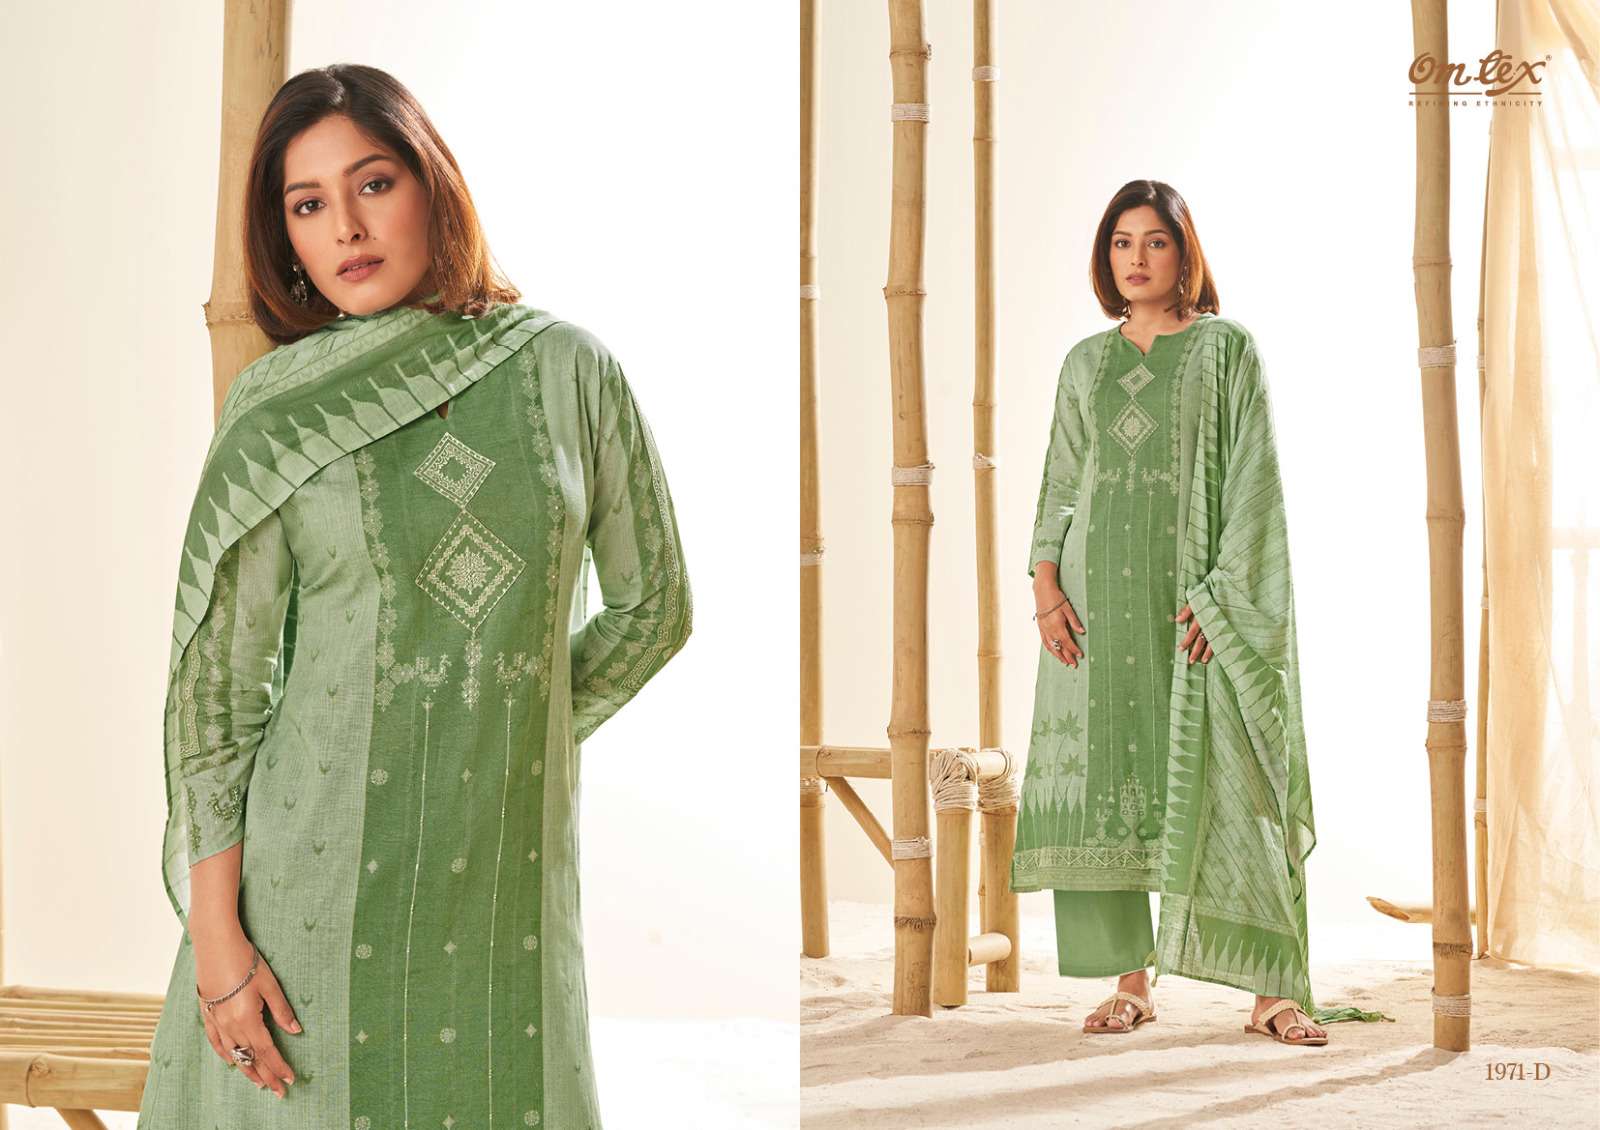 om tex maanvi 1971 series trendy designer salwar kameez catalogue online supplier surat